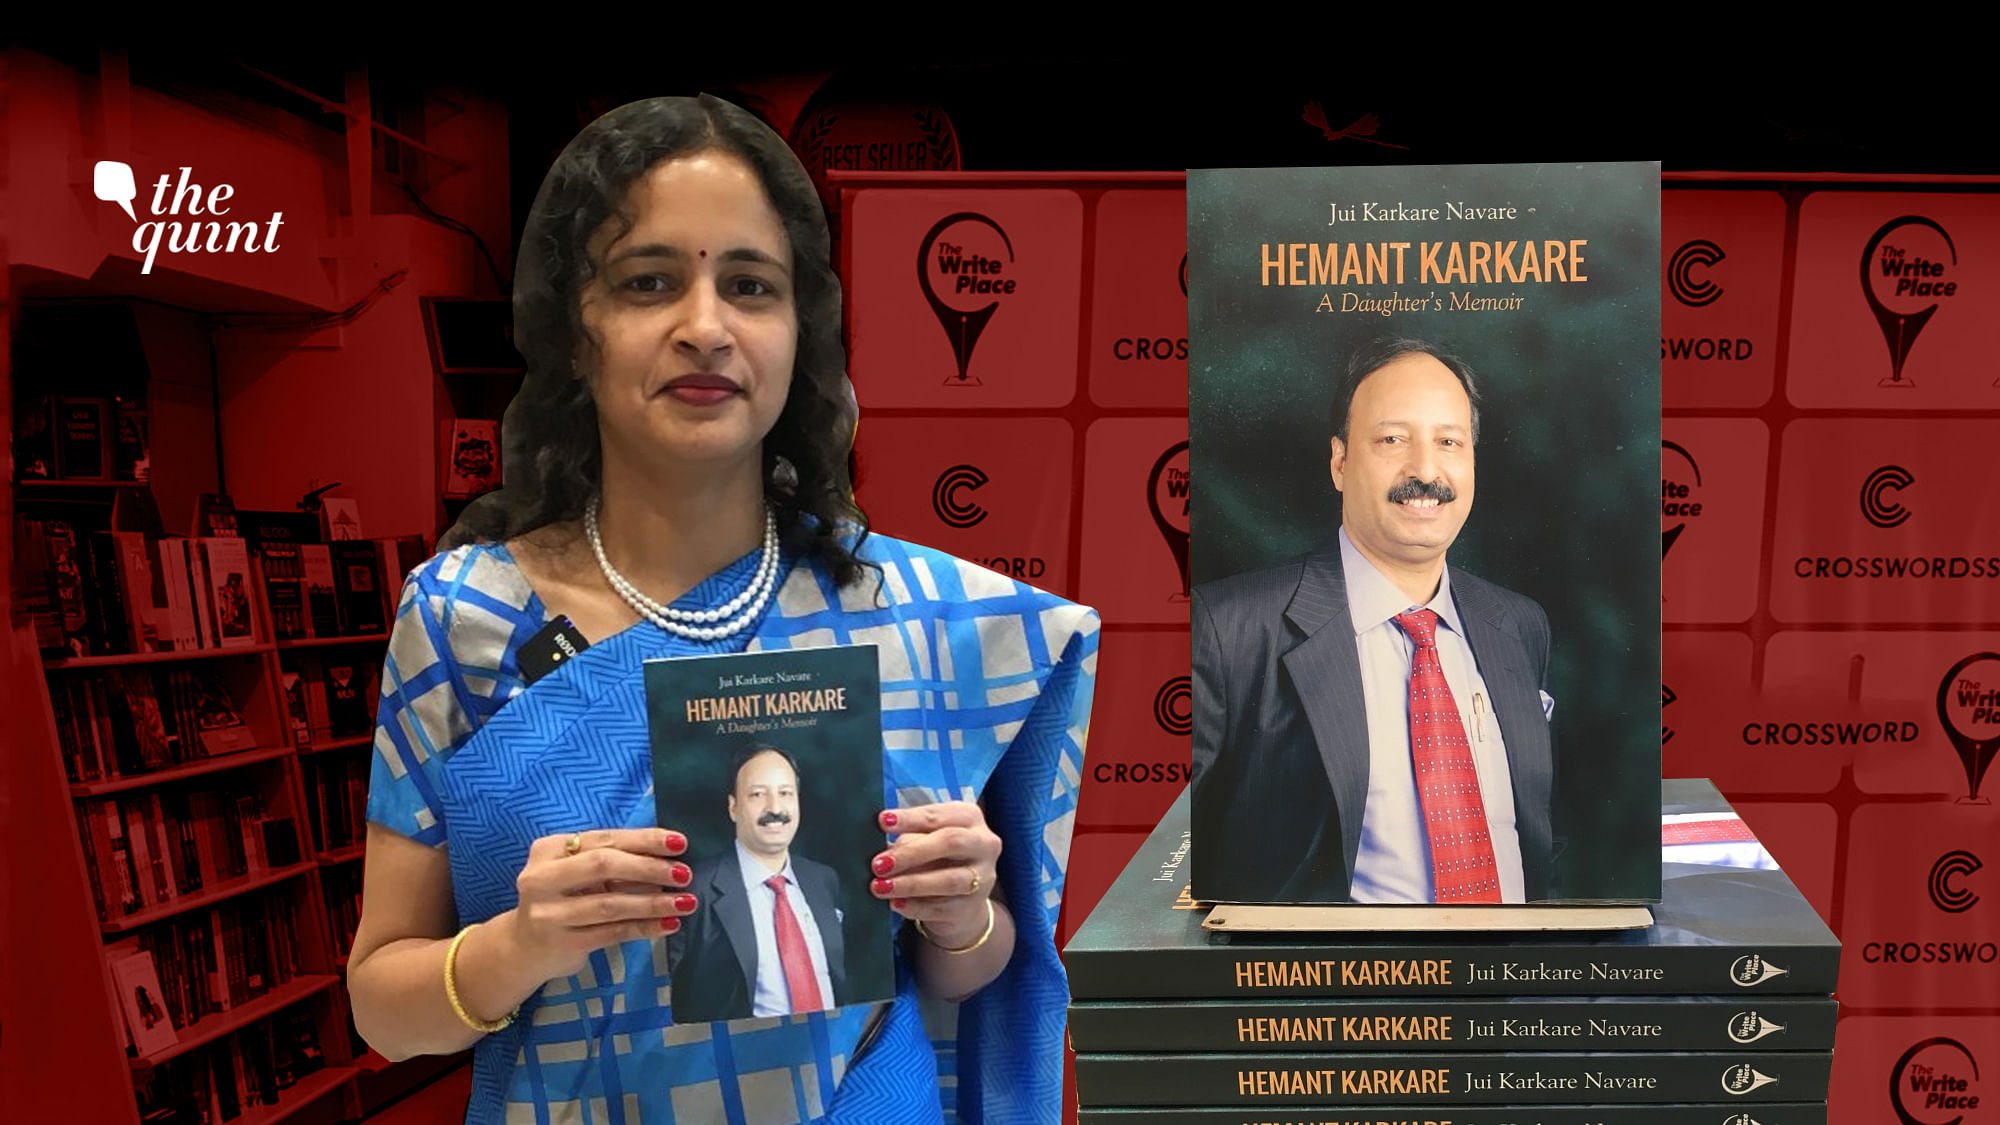 Jui Karkare Navare launched her book ‘Hemant Karkare: A Daughter’s Memoir’ in Mumbai on 25 November.